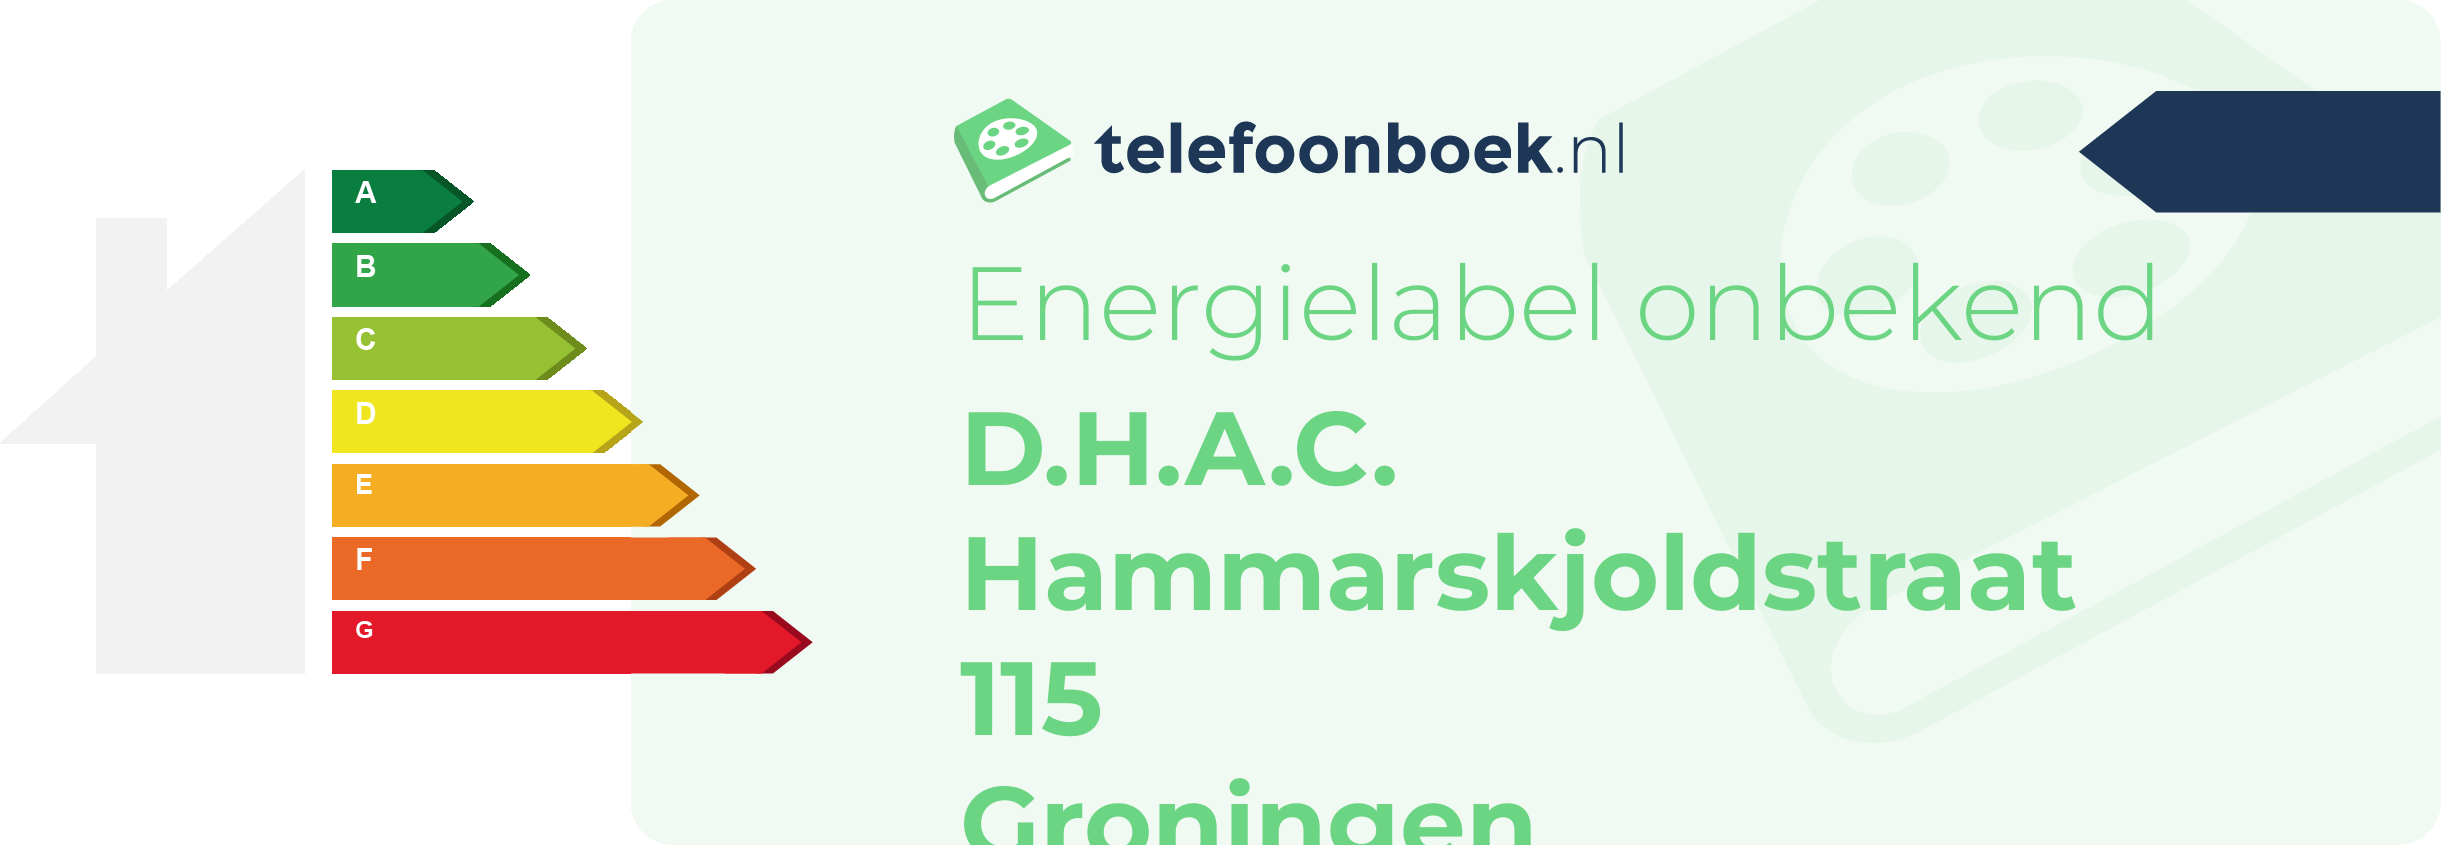 Energielabel D.H.A.C. Hammarskjoldstraat 115 Groningen